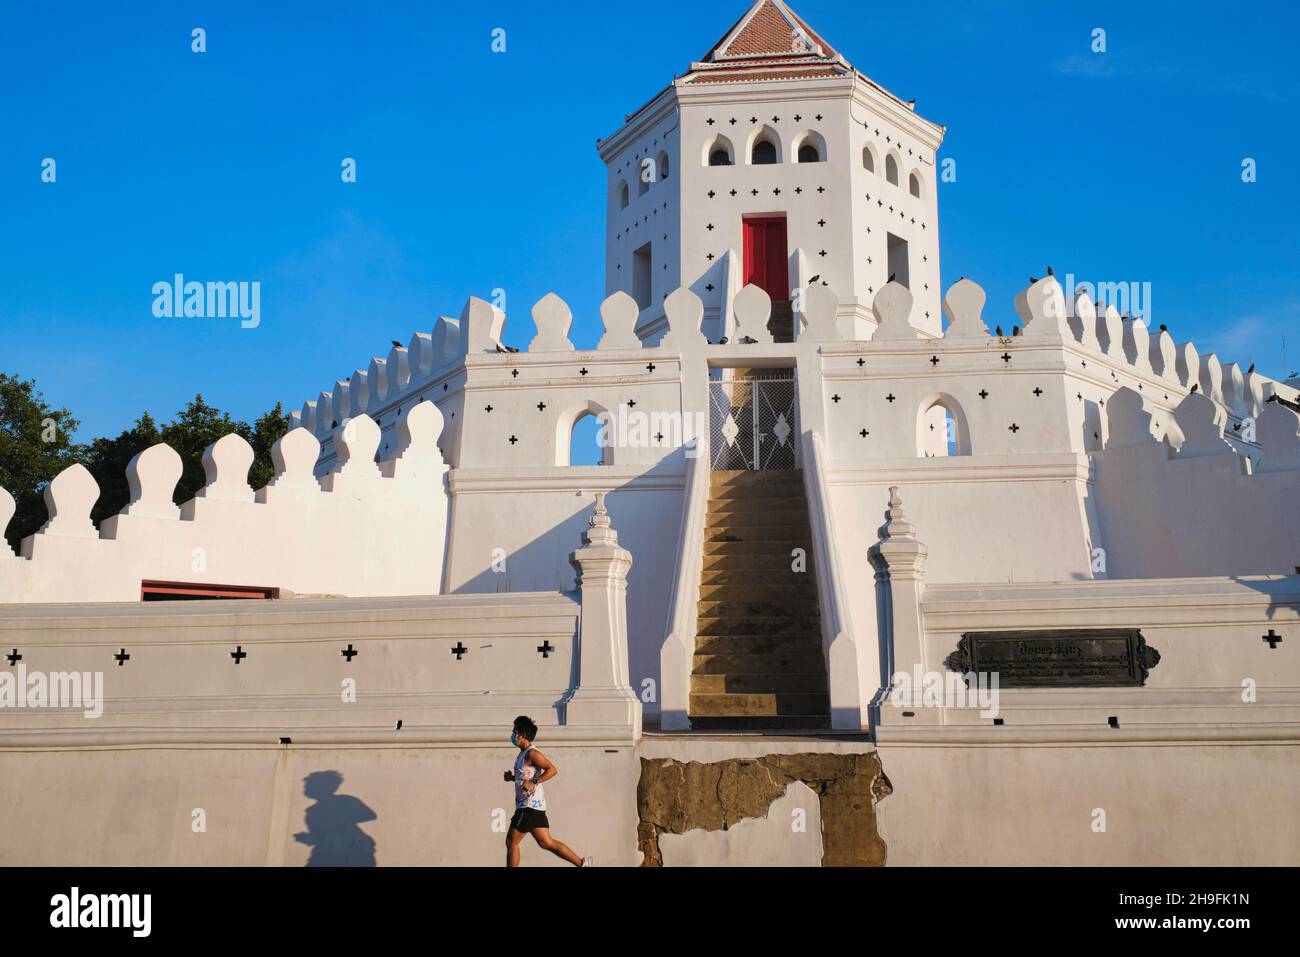 Un jogger passe devant le fort Phra Sumen, un petit fort, qui fait partie d'un ancien mur de la ville dans le parc Santichaiprakan, Phra Arthit Rd., Banglamphoo, Bangkok, Thaïlande Banque D'Images